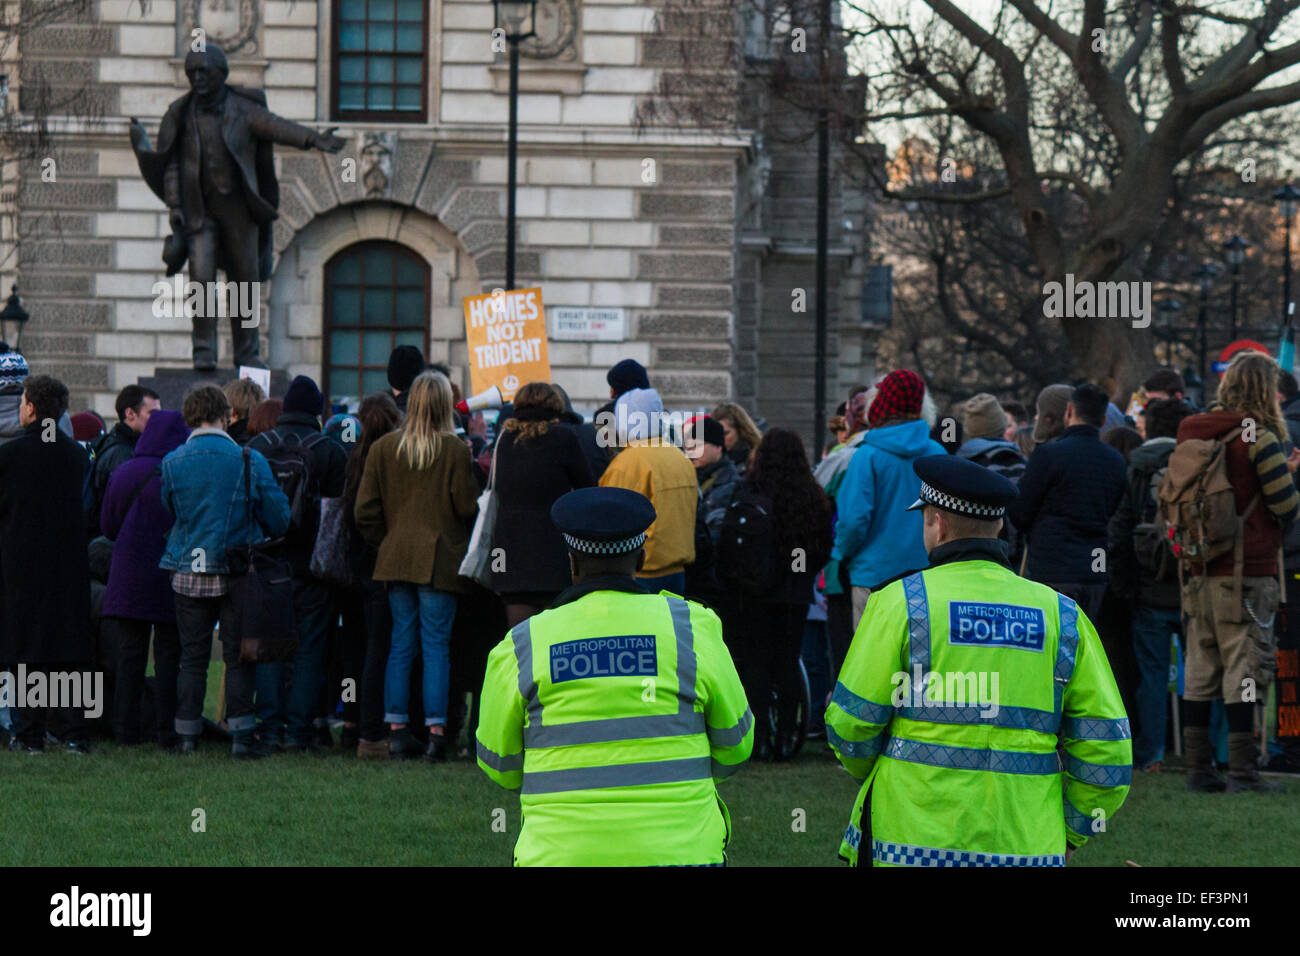 24 janvier 2014, Londres. Les protestataires manifester leur droit de manifester sur la place du Parlement au cours d'occuper de la démocratie. Banque D'Images